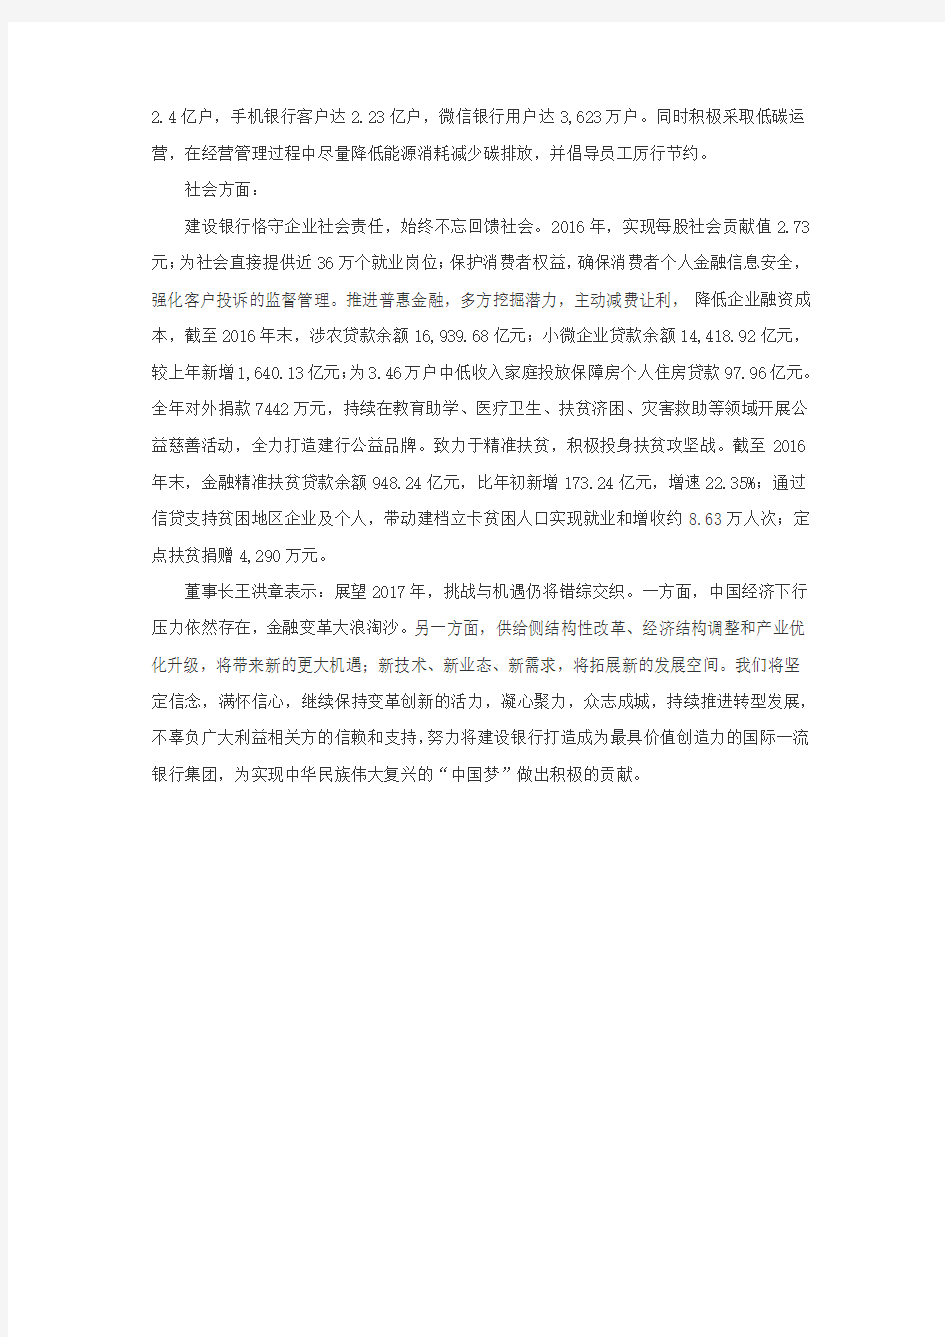 中国建设银行发布2016年社会责任报告